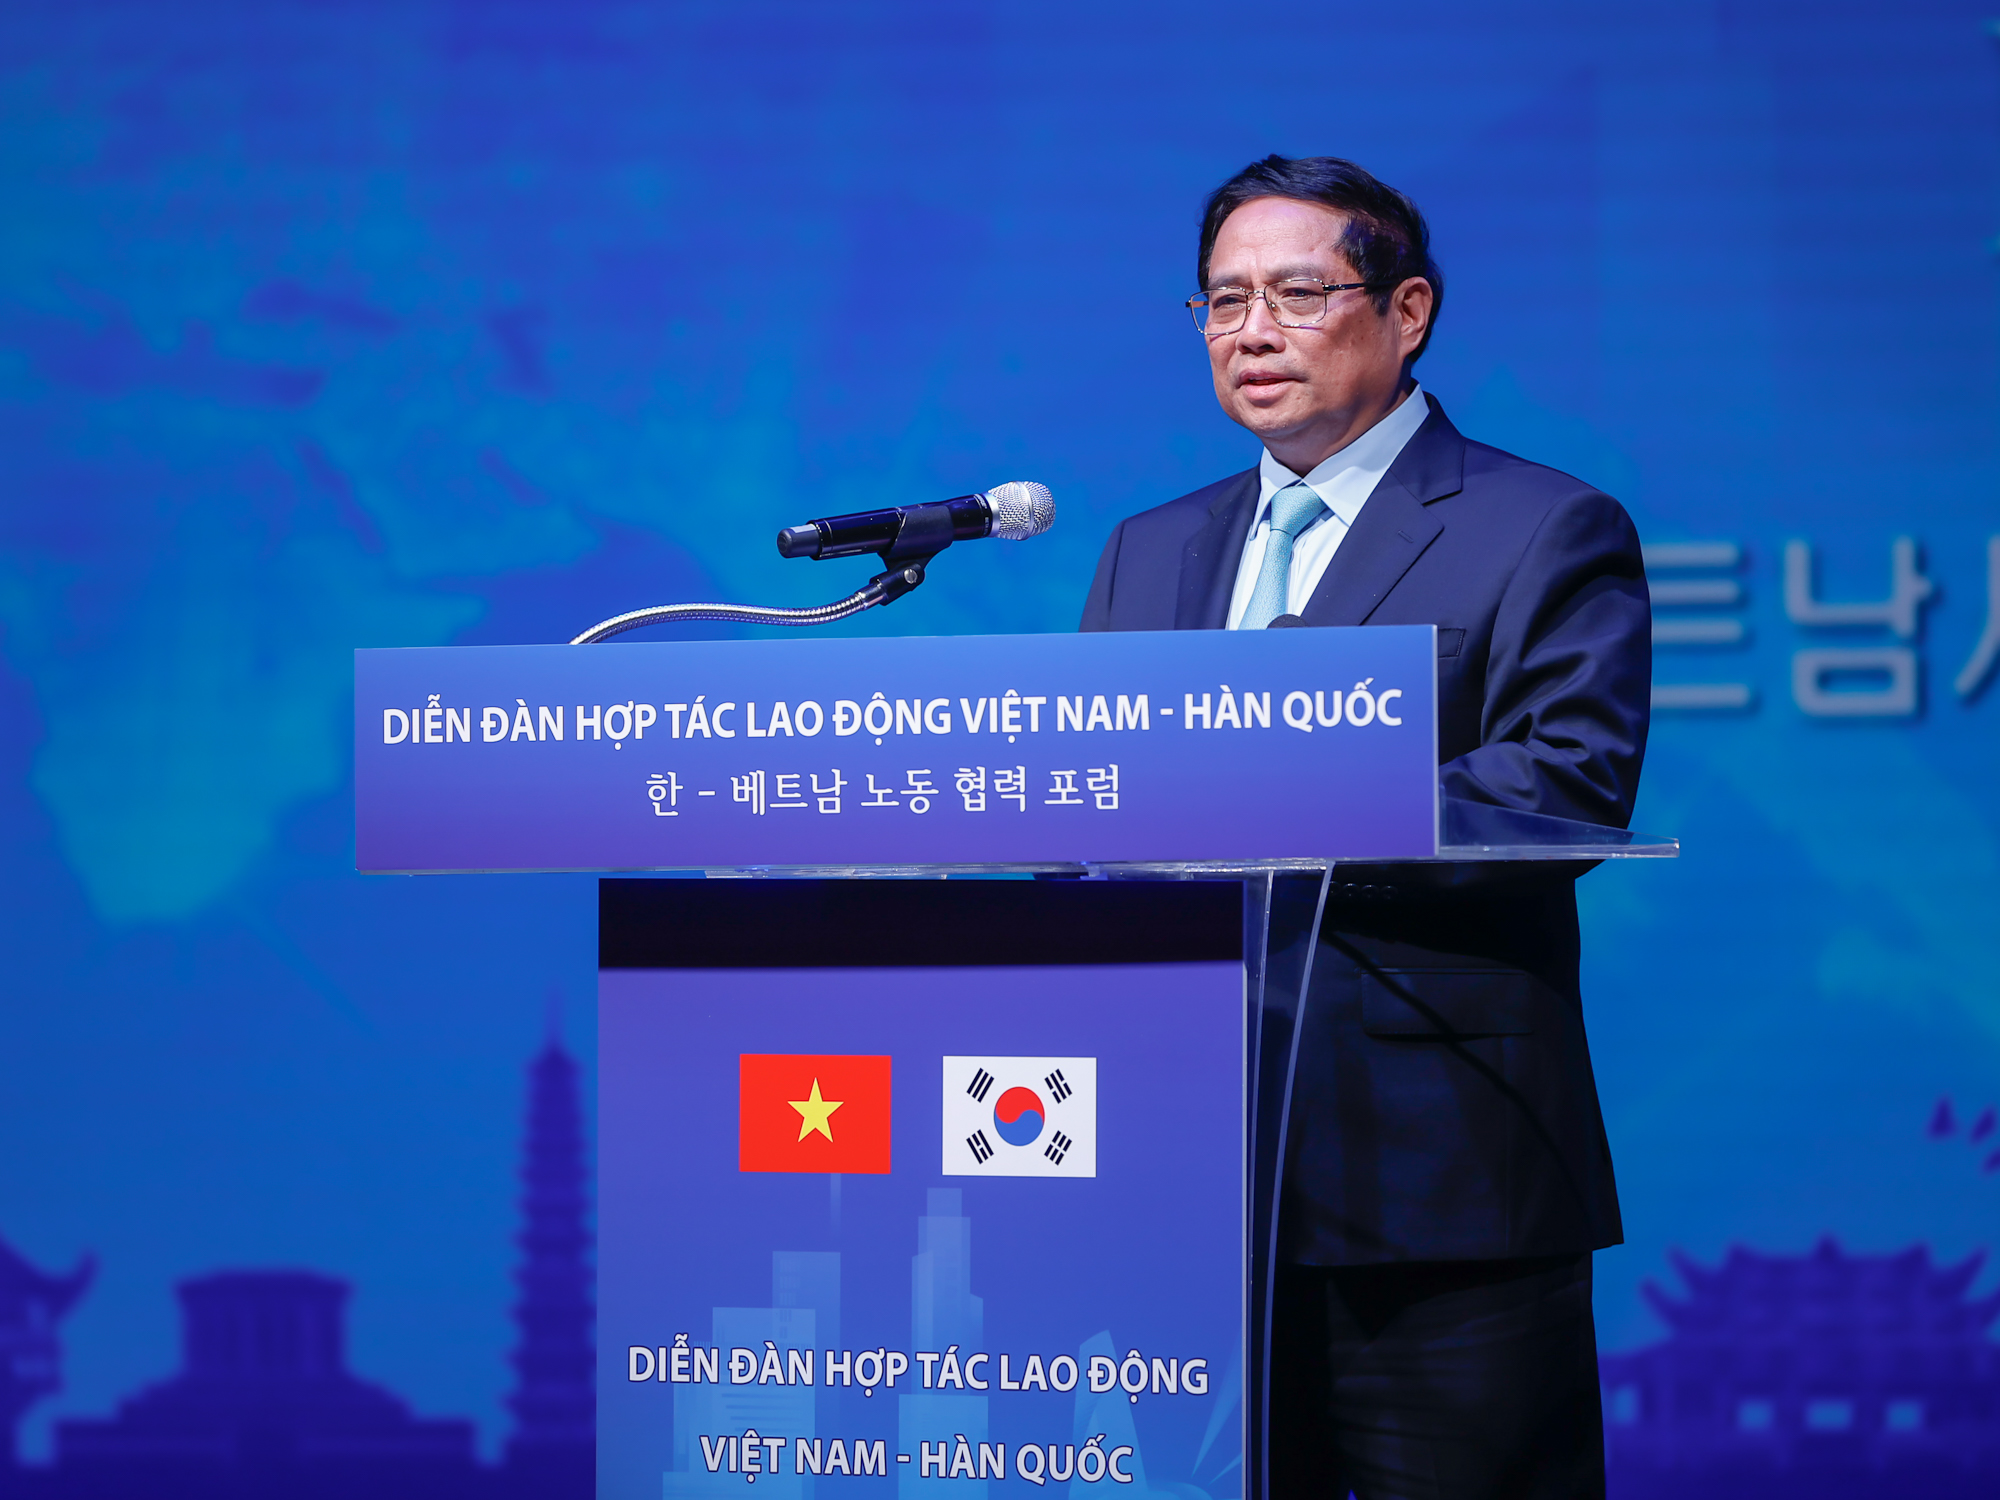 Thủ tướng Phạm Minh Chính nhấn mạnh yêu cầu phát triển quan hệ hợp tác lao động lành mạnh, bình đẳng, an toàn, văn minh, nhân văn - Ảnh: VGP/Nhật Bắc